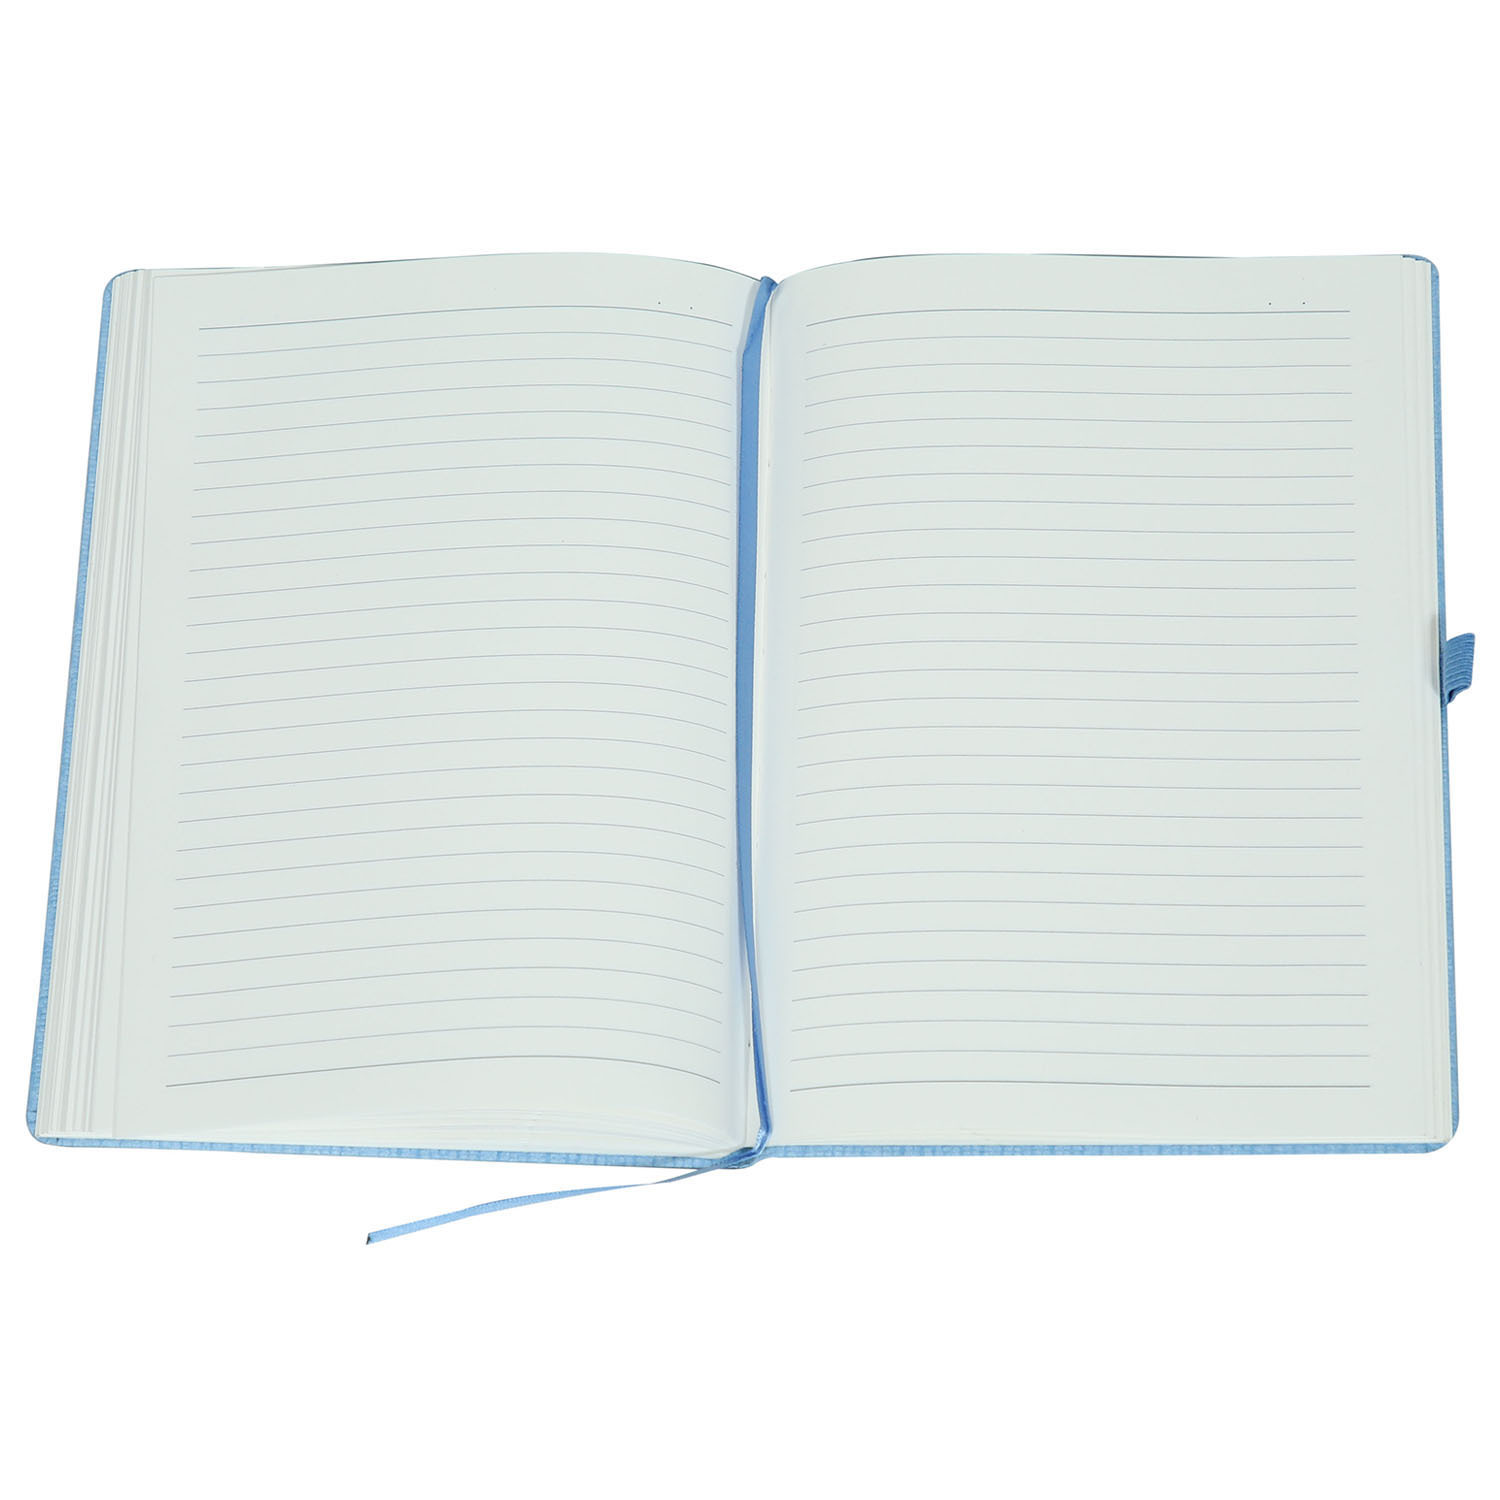 Comma Abaca - A5 Size - Hard Bound Notebook (Sky Blue)